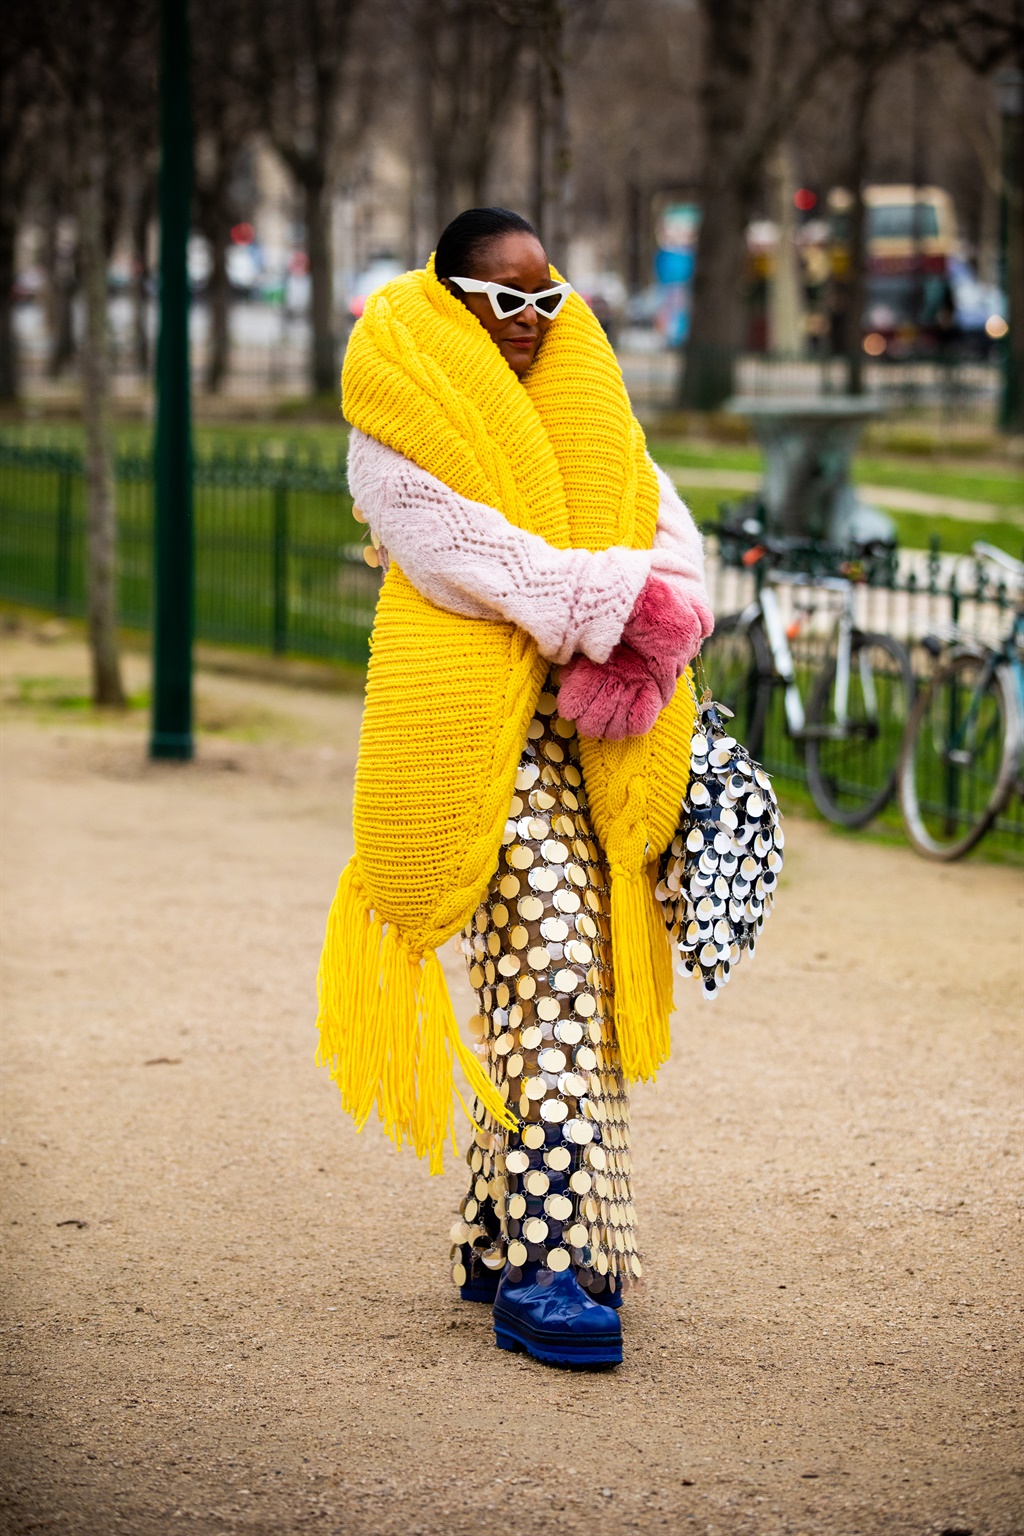 PARIS, FRANCE - MARCH 05: Michelle Elie, wearing a